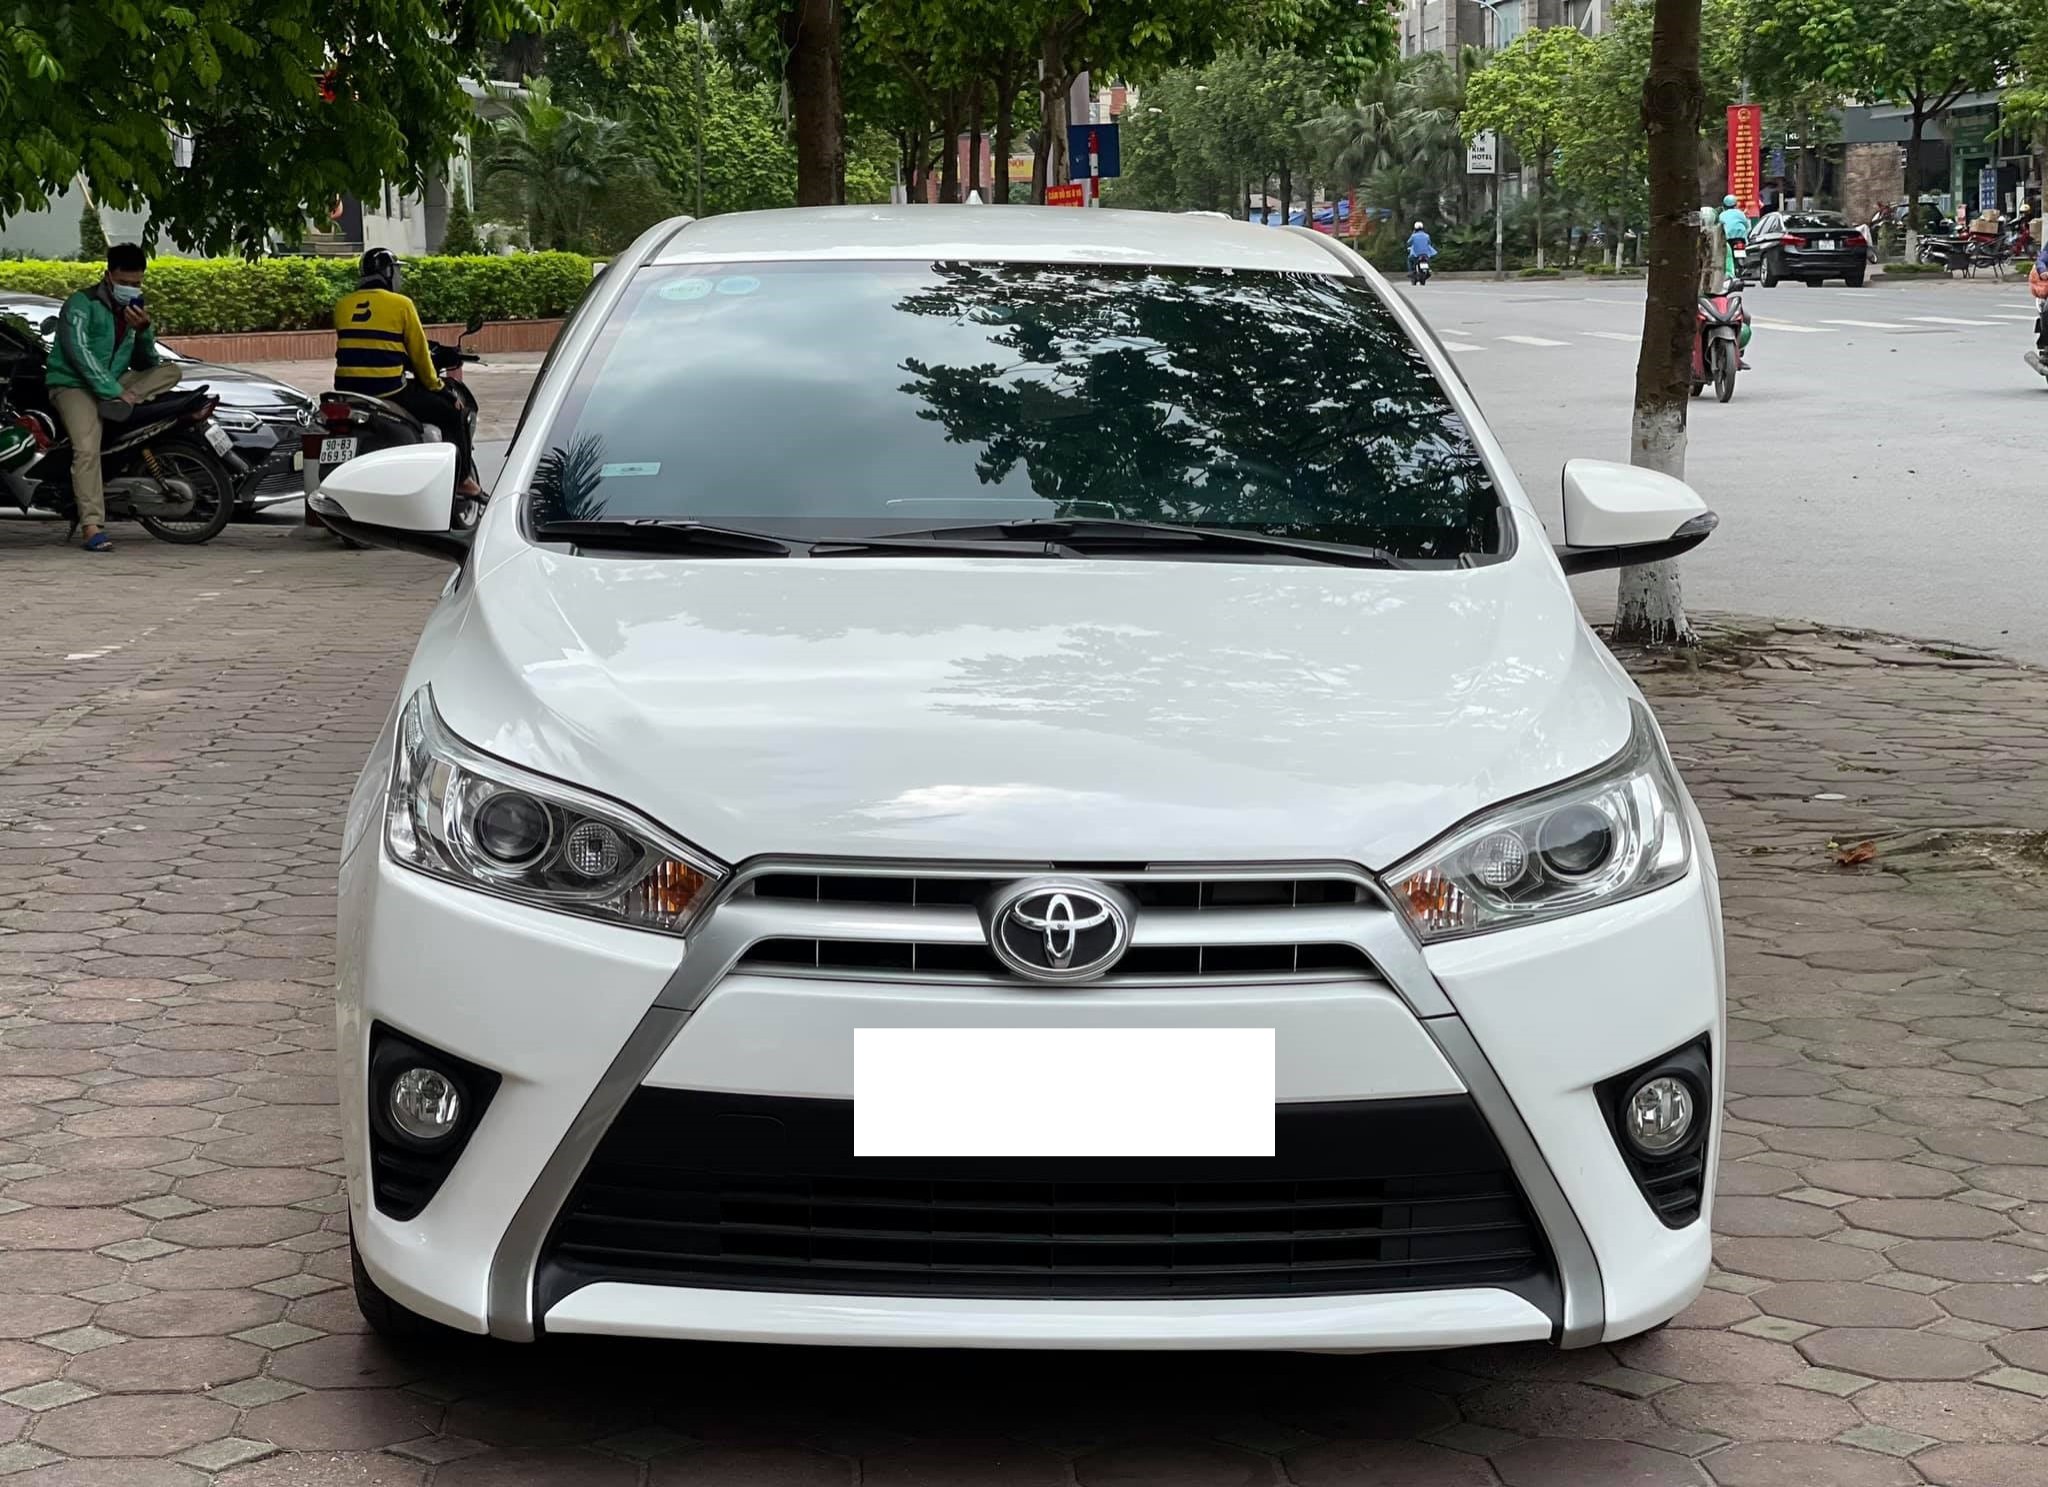 Bán xe Toyota Yaris G, đời 2018, màu Trắng, nhập khẩu, giá 422 triệu